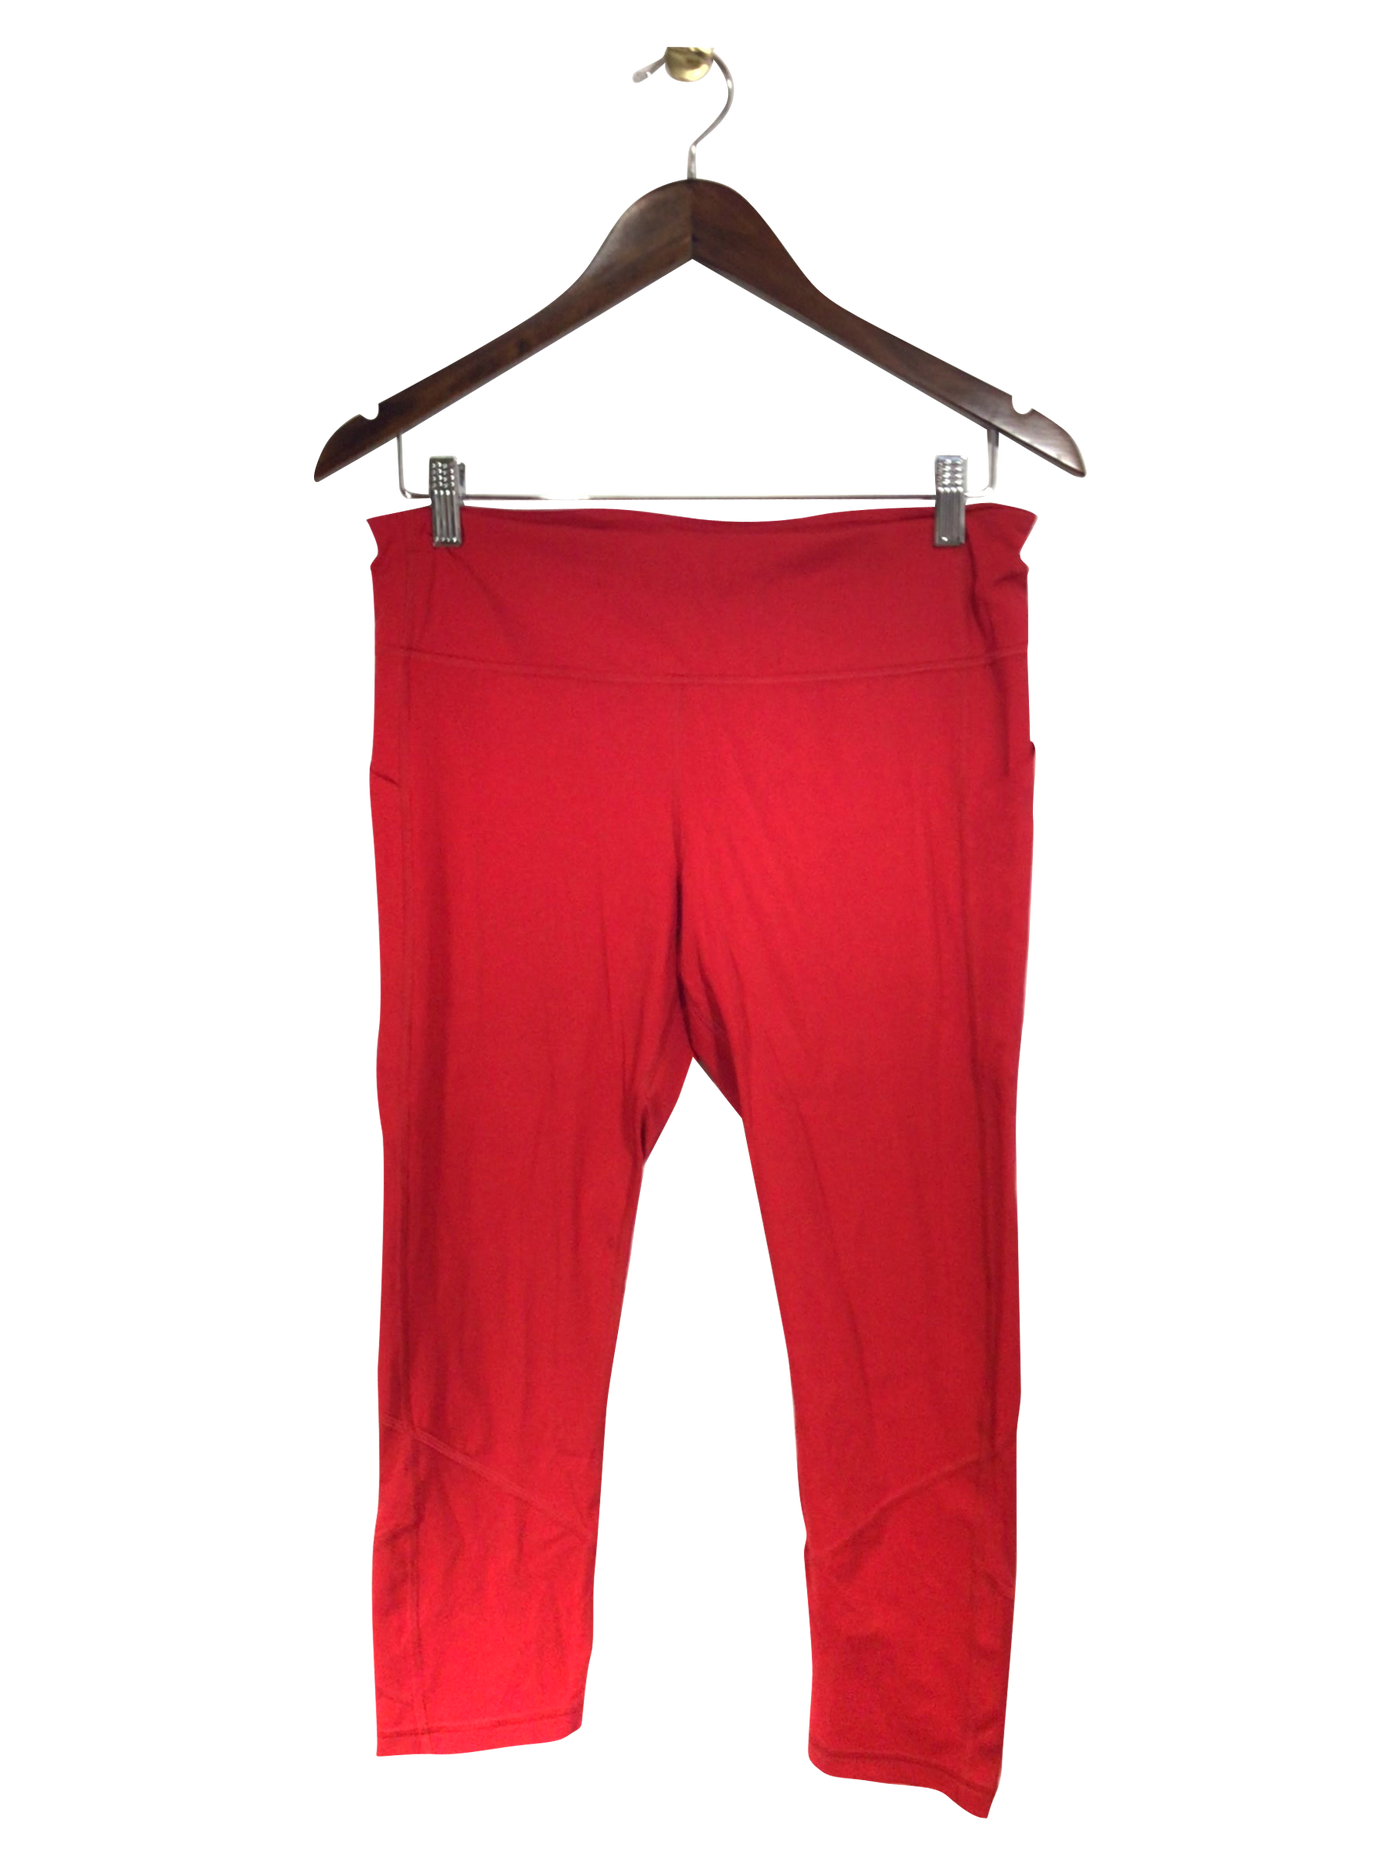 UNBRANDED Regular fit Activewear Legging in Red - Size M | 11.99 $ KOOP